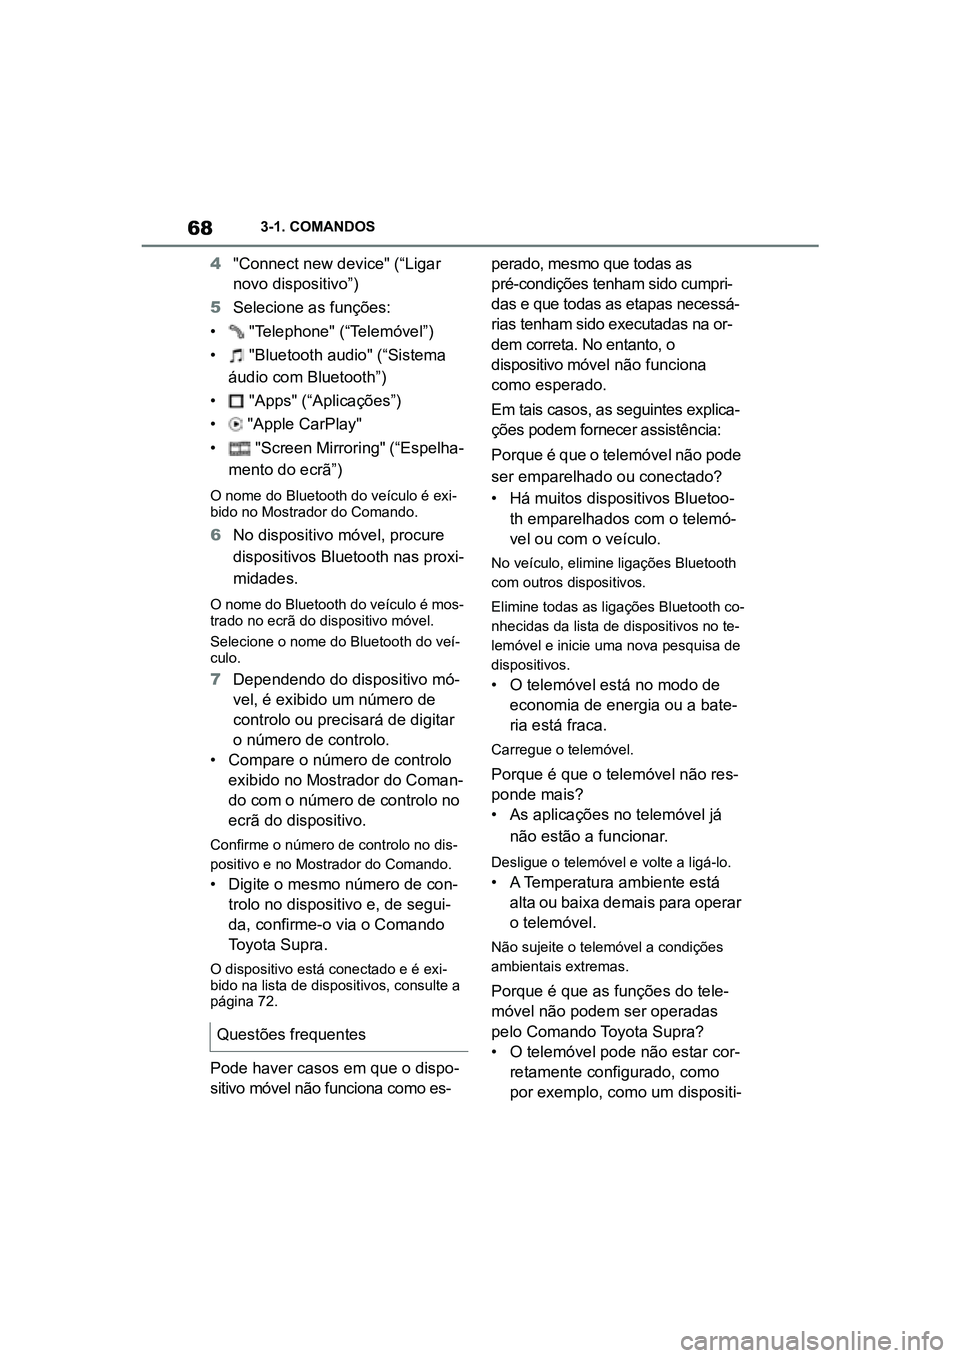 TOYOTA SUPRA 2019  Manual de utilização (in Portuguese) 68
Supra Owner's Manual3-1. COMANDOS
4
"Connect new device" (“Ligar 
novo dispositivo”)
5 Selecione as funções:
•  

"Telephone" (“Telemóvel”)
•  "Bluetooth audi